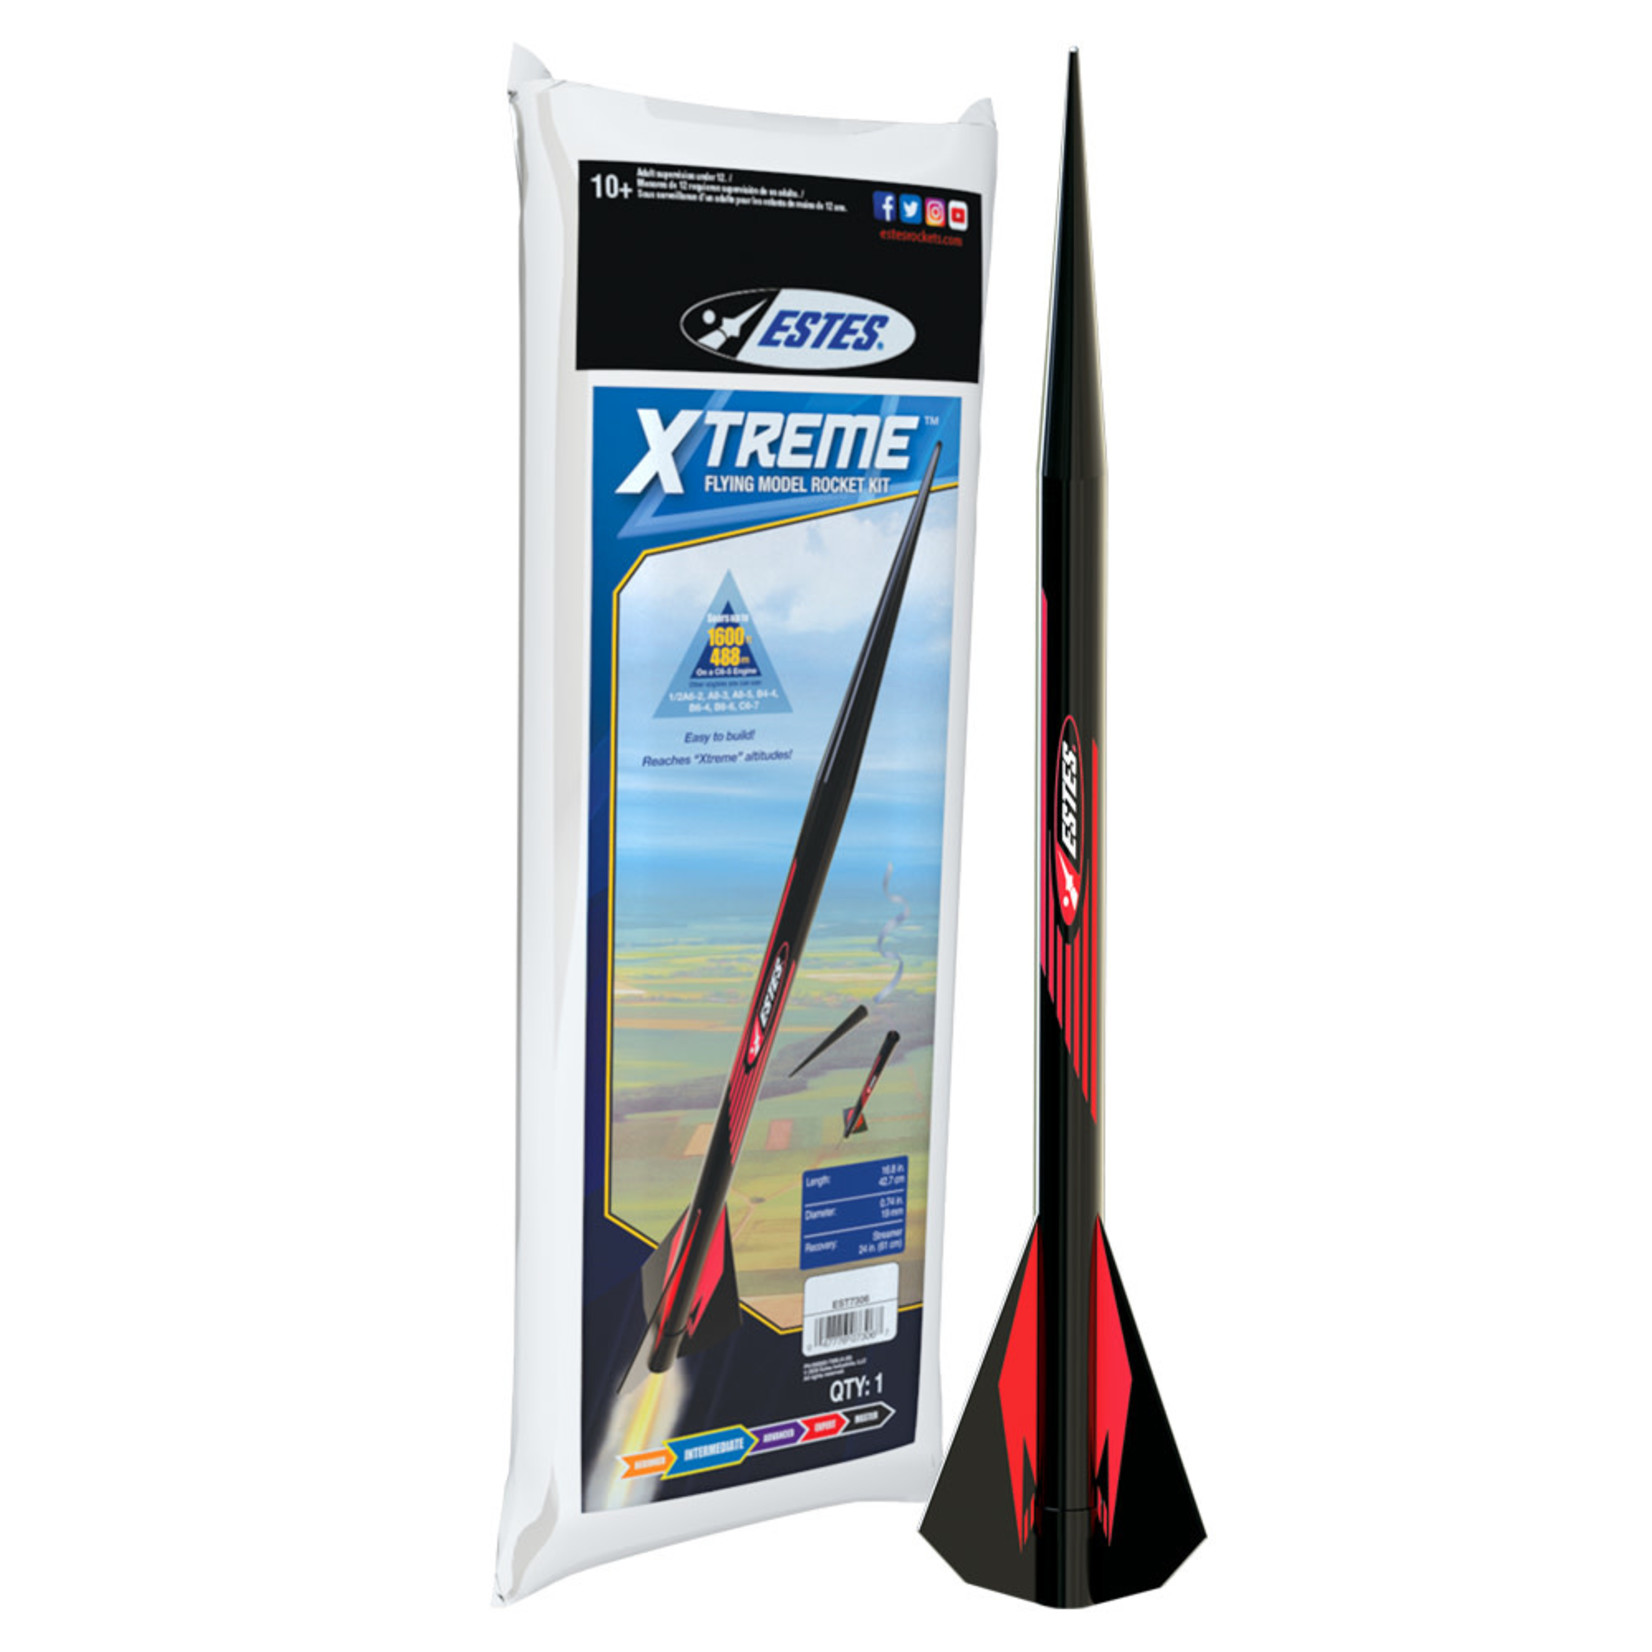 Estes EST7306 Xtreme Rocket